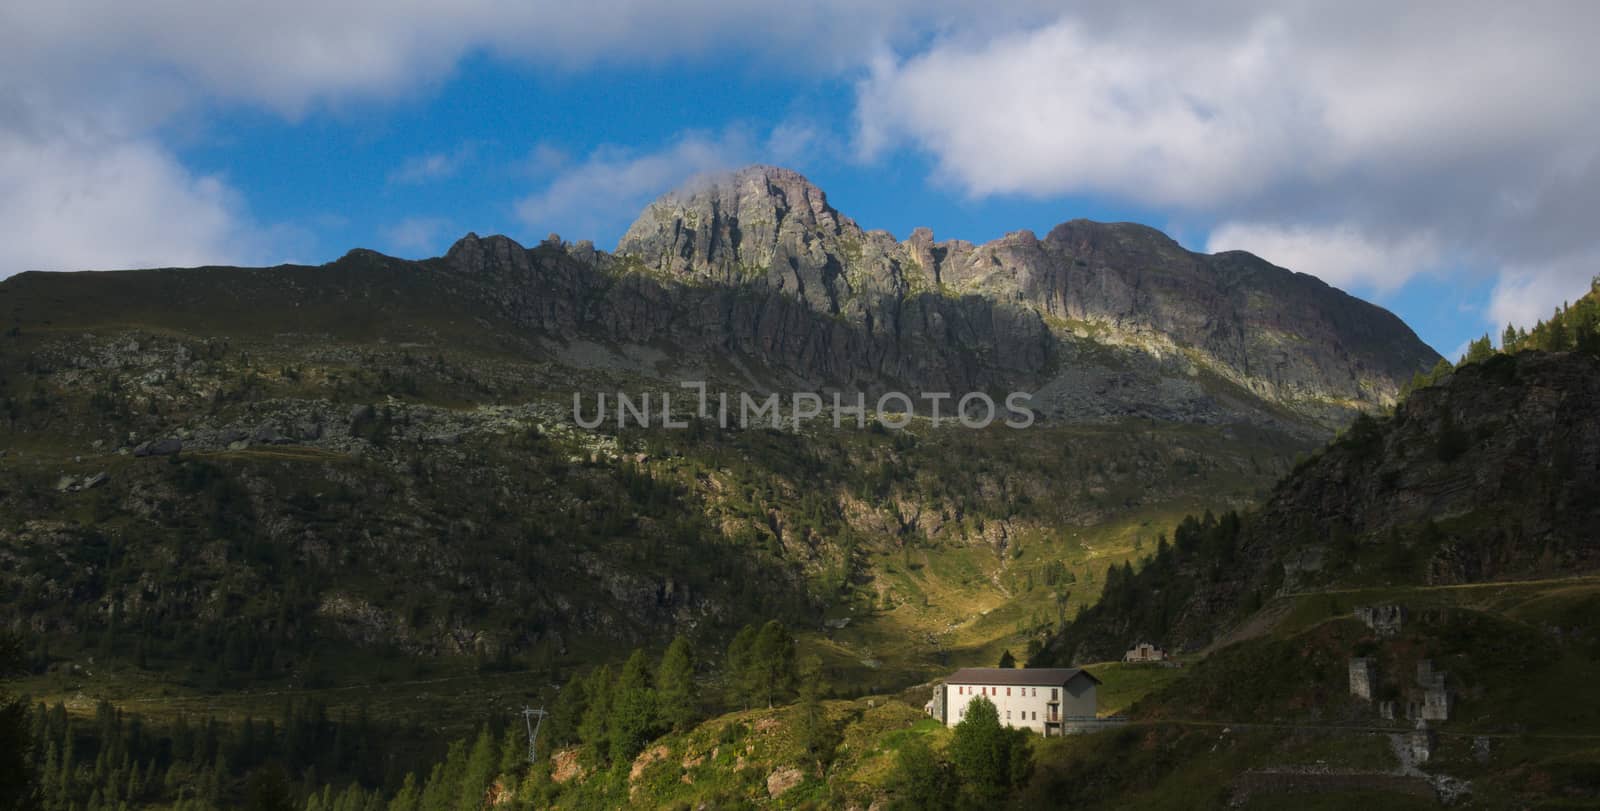 Pizzo del becco peak on the Bergamo Alps
 by gigidread